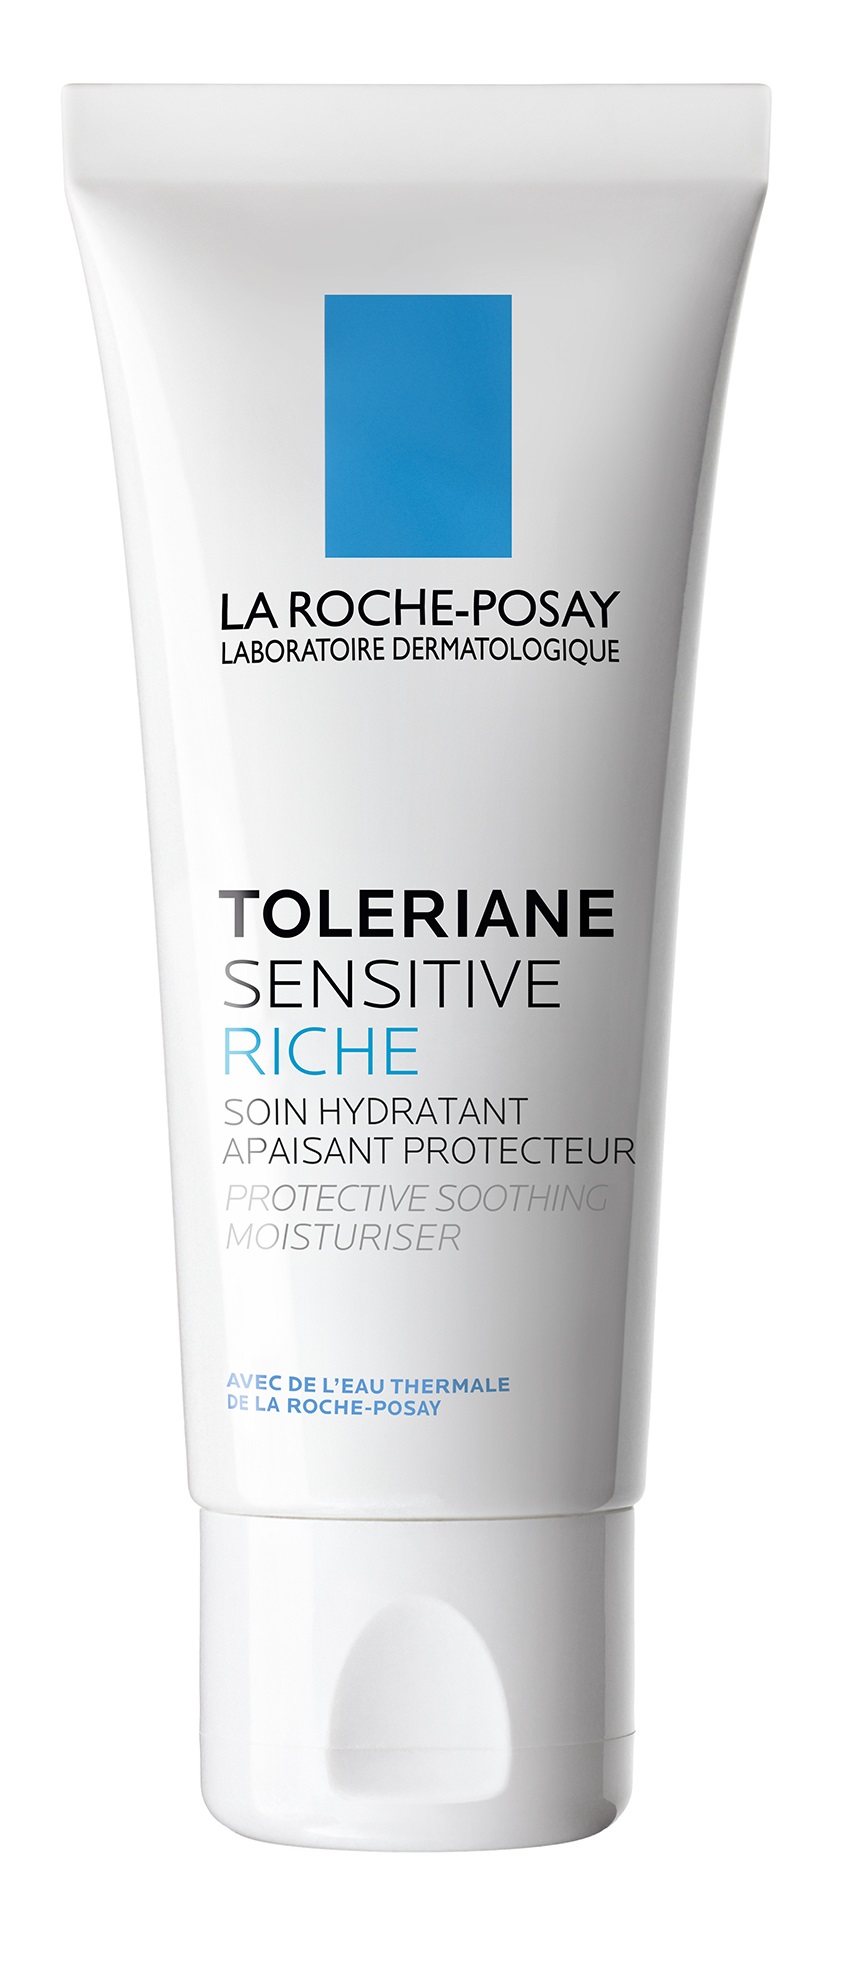 LA ROCHE-POSAY Toleriane Sensitive Riche nyugtató-védő krém száraz bőrre 40 ml